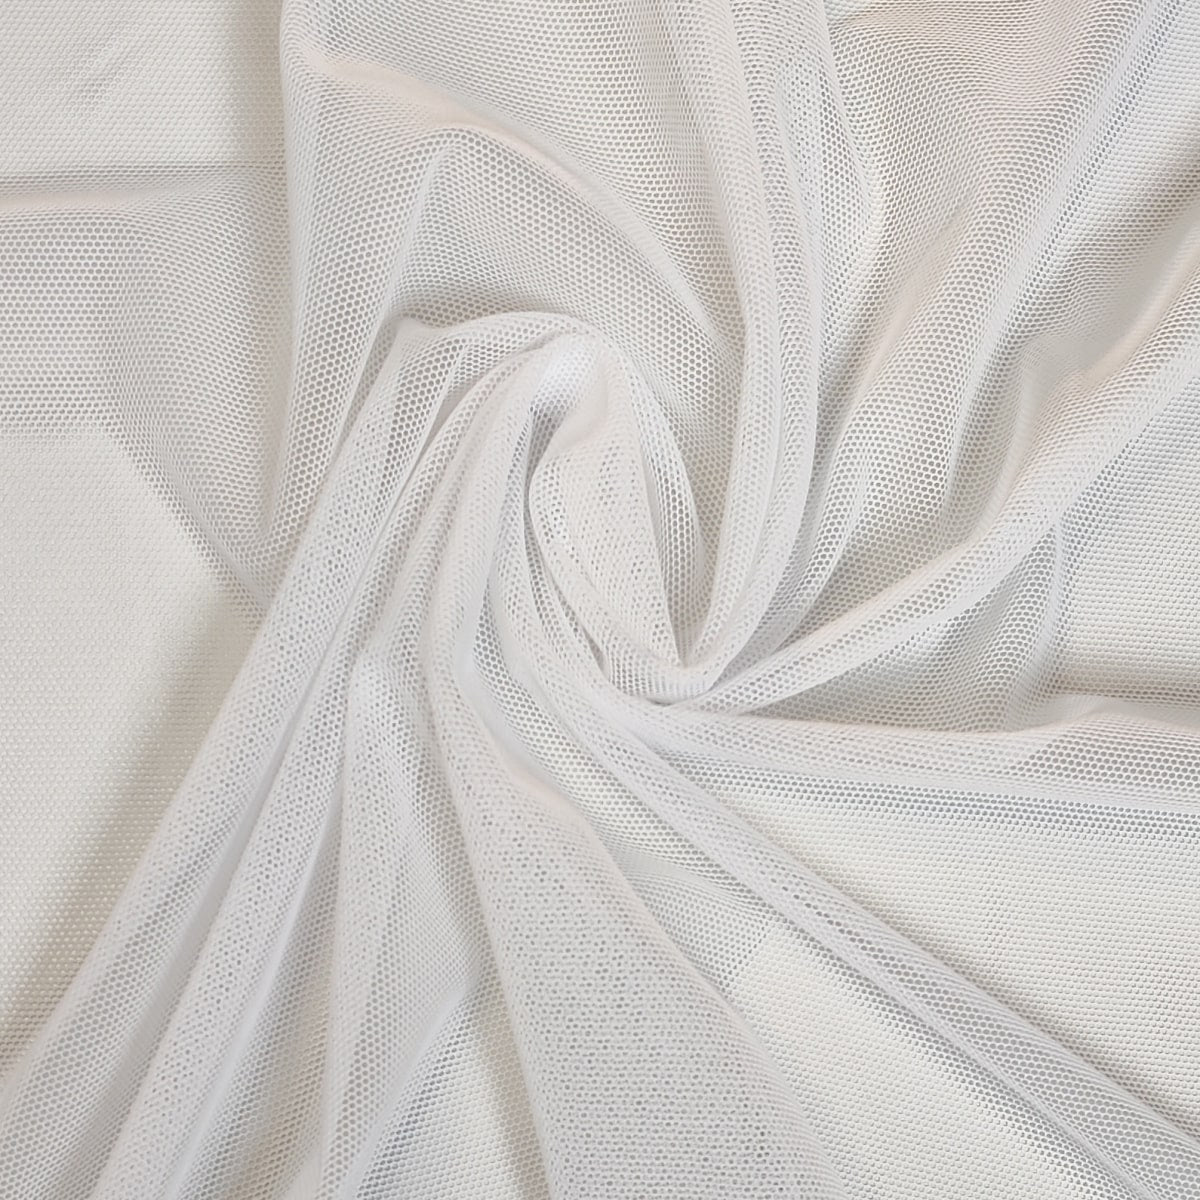 Power Mesh Fabric - White